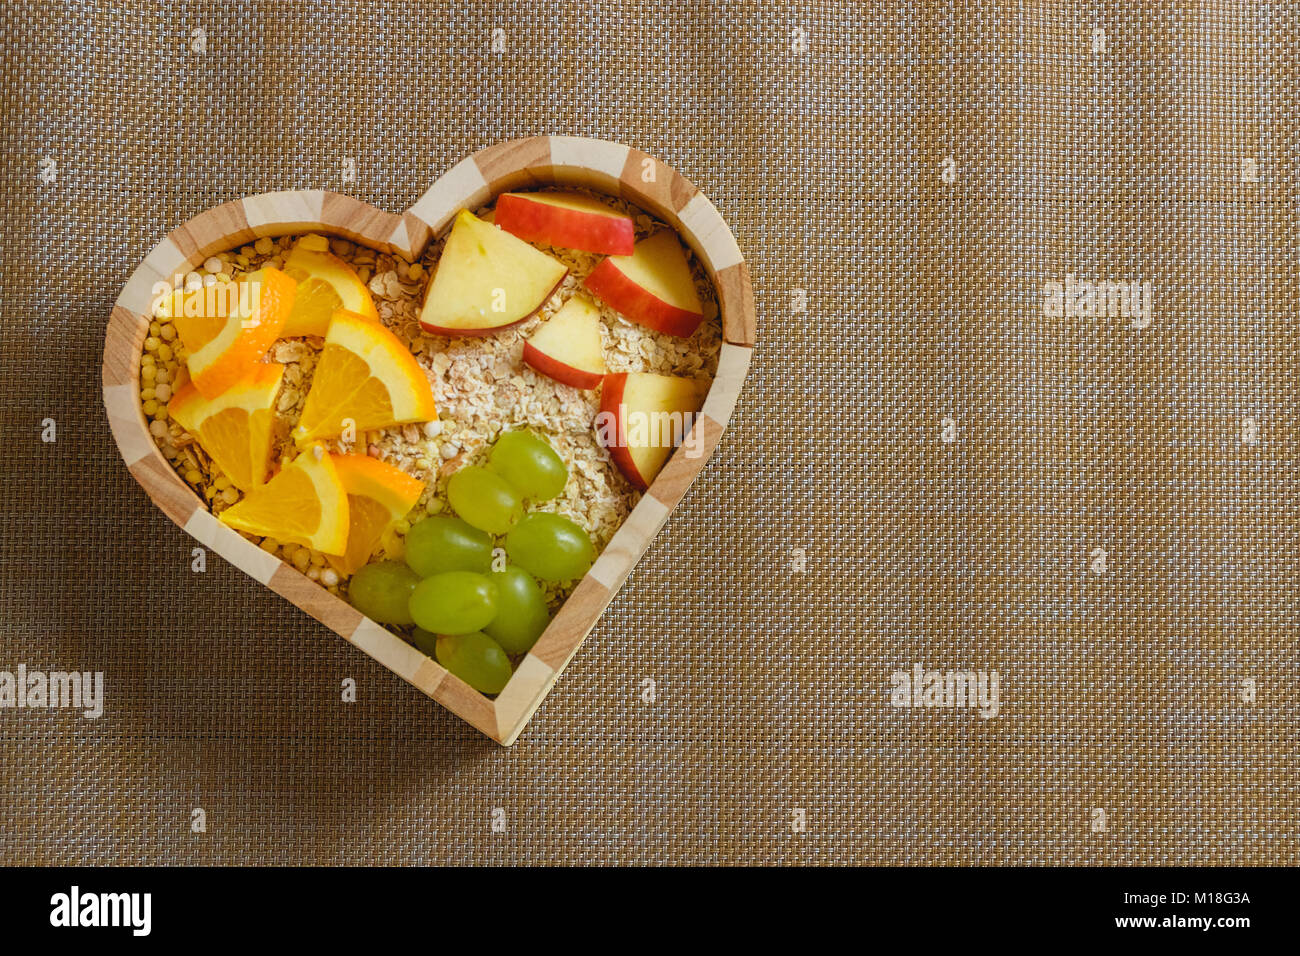 Fruits mélangés dans un bol en forme de coeur. Concept d'aliments sains Banque D'Images